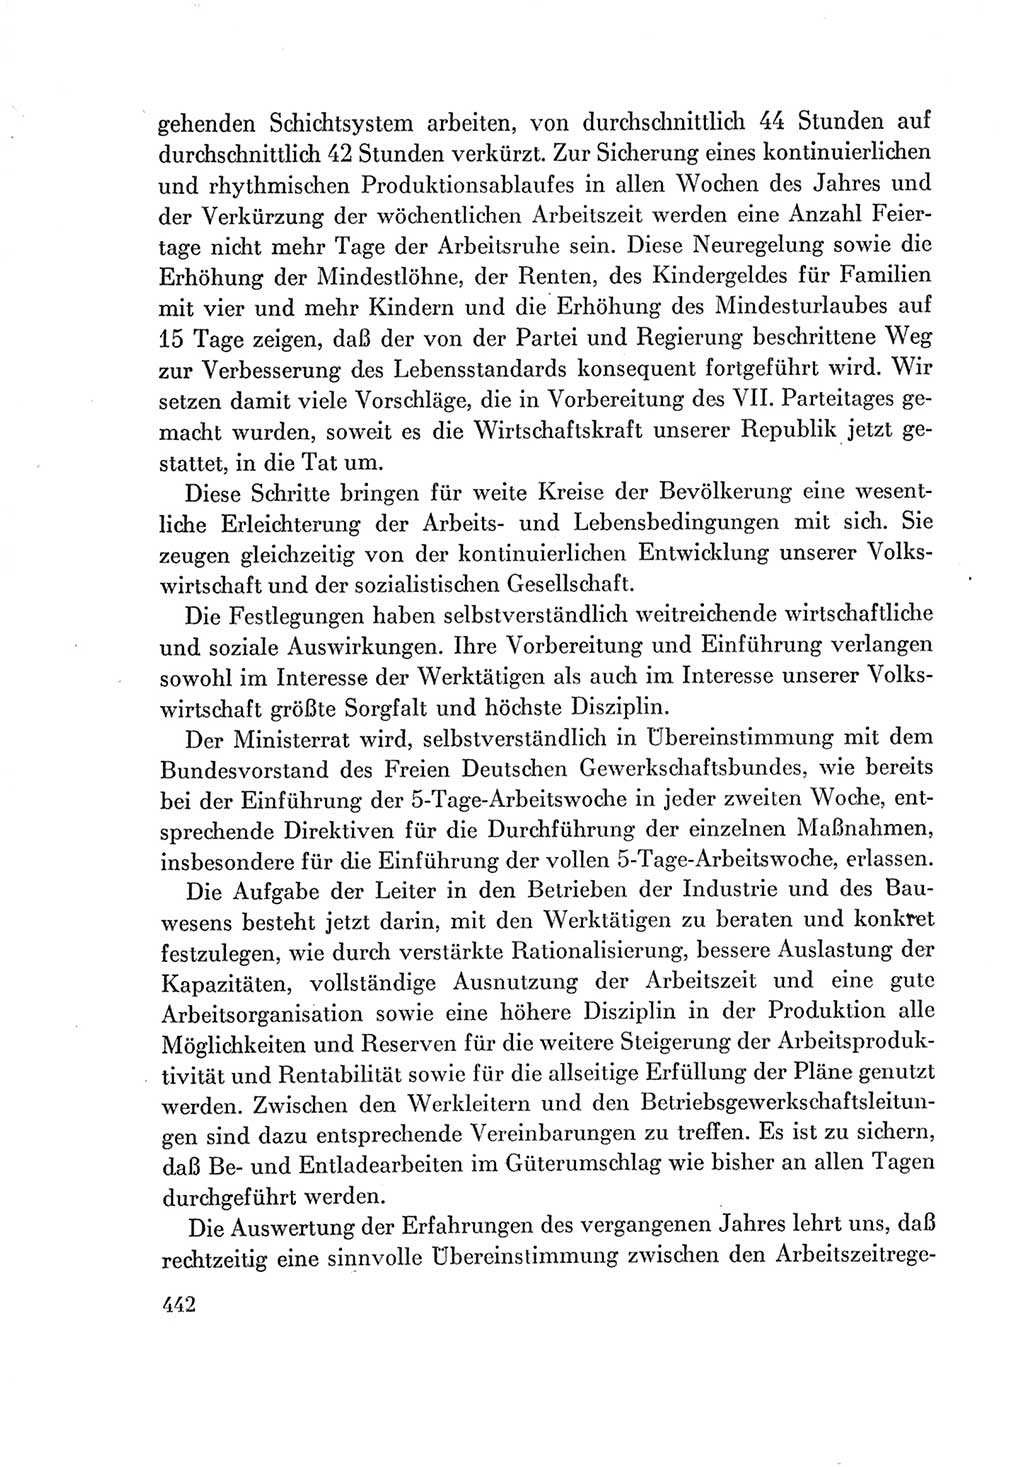 Protokoll der Verhandlungen des Ⅶ. Parteitages der Sozialistischen Einheitspartei Deutschlands (SED) [Deutsche Demokratische Republik (DDR)] 1967, Band Ⅰ, Seite 442 (Prot. Verh. Ⅶ. PT SED DDR 1967, Bd. Ⅰ, S. 442)